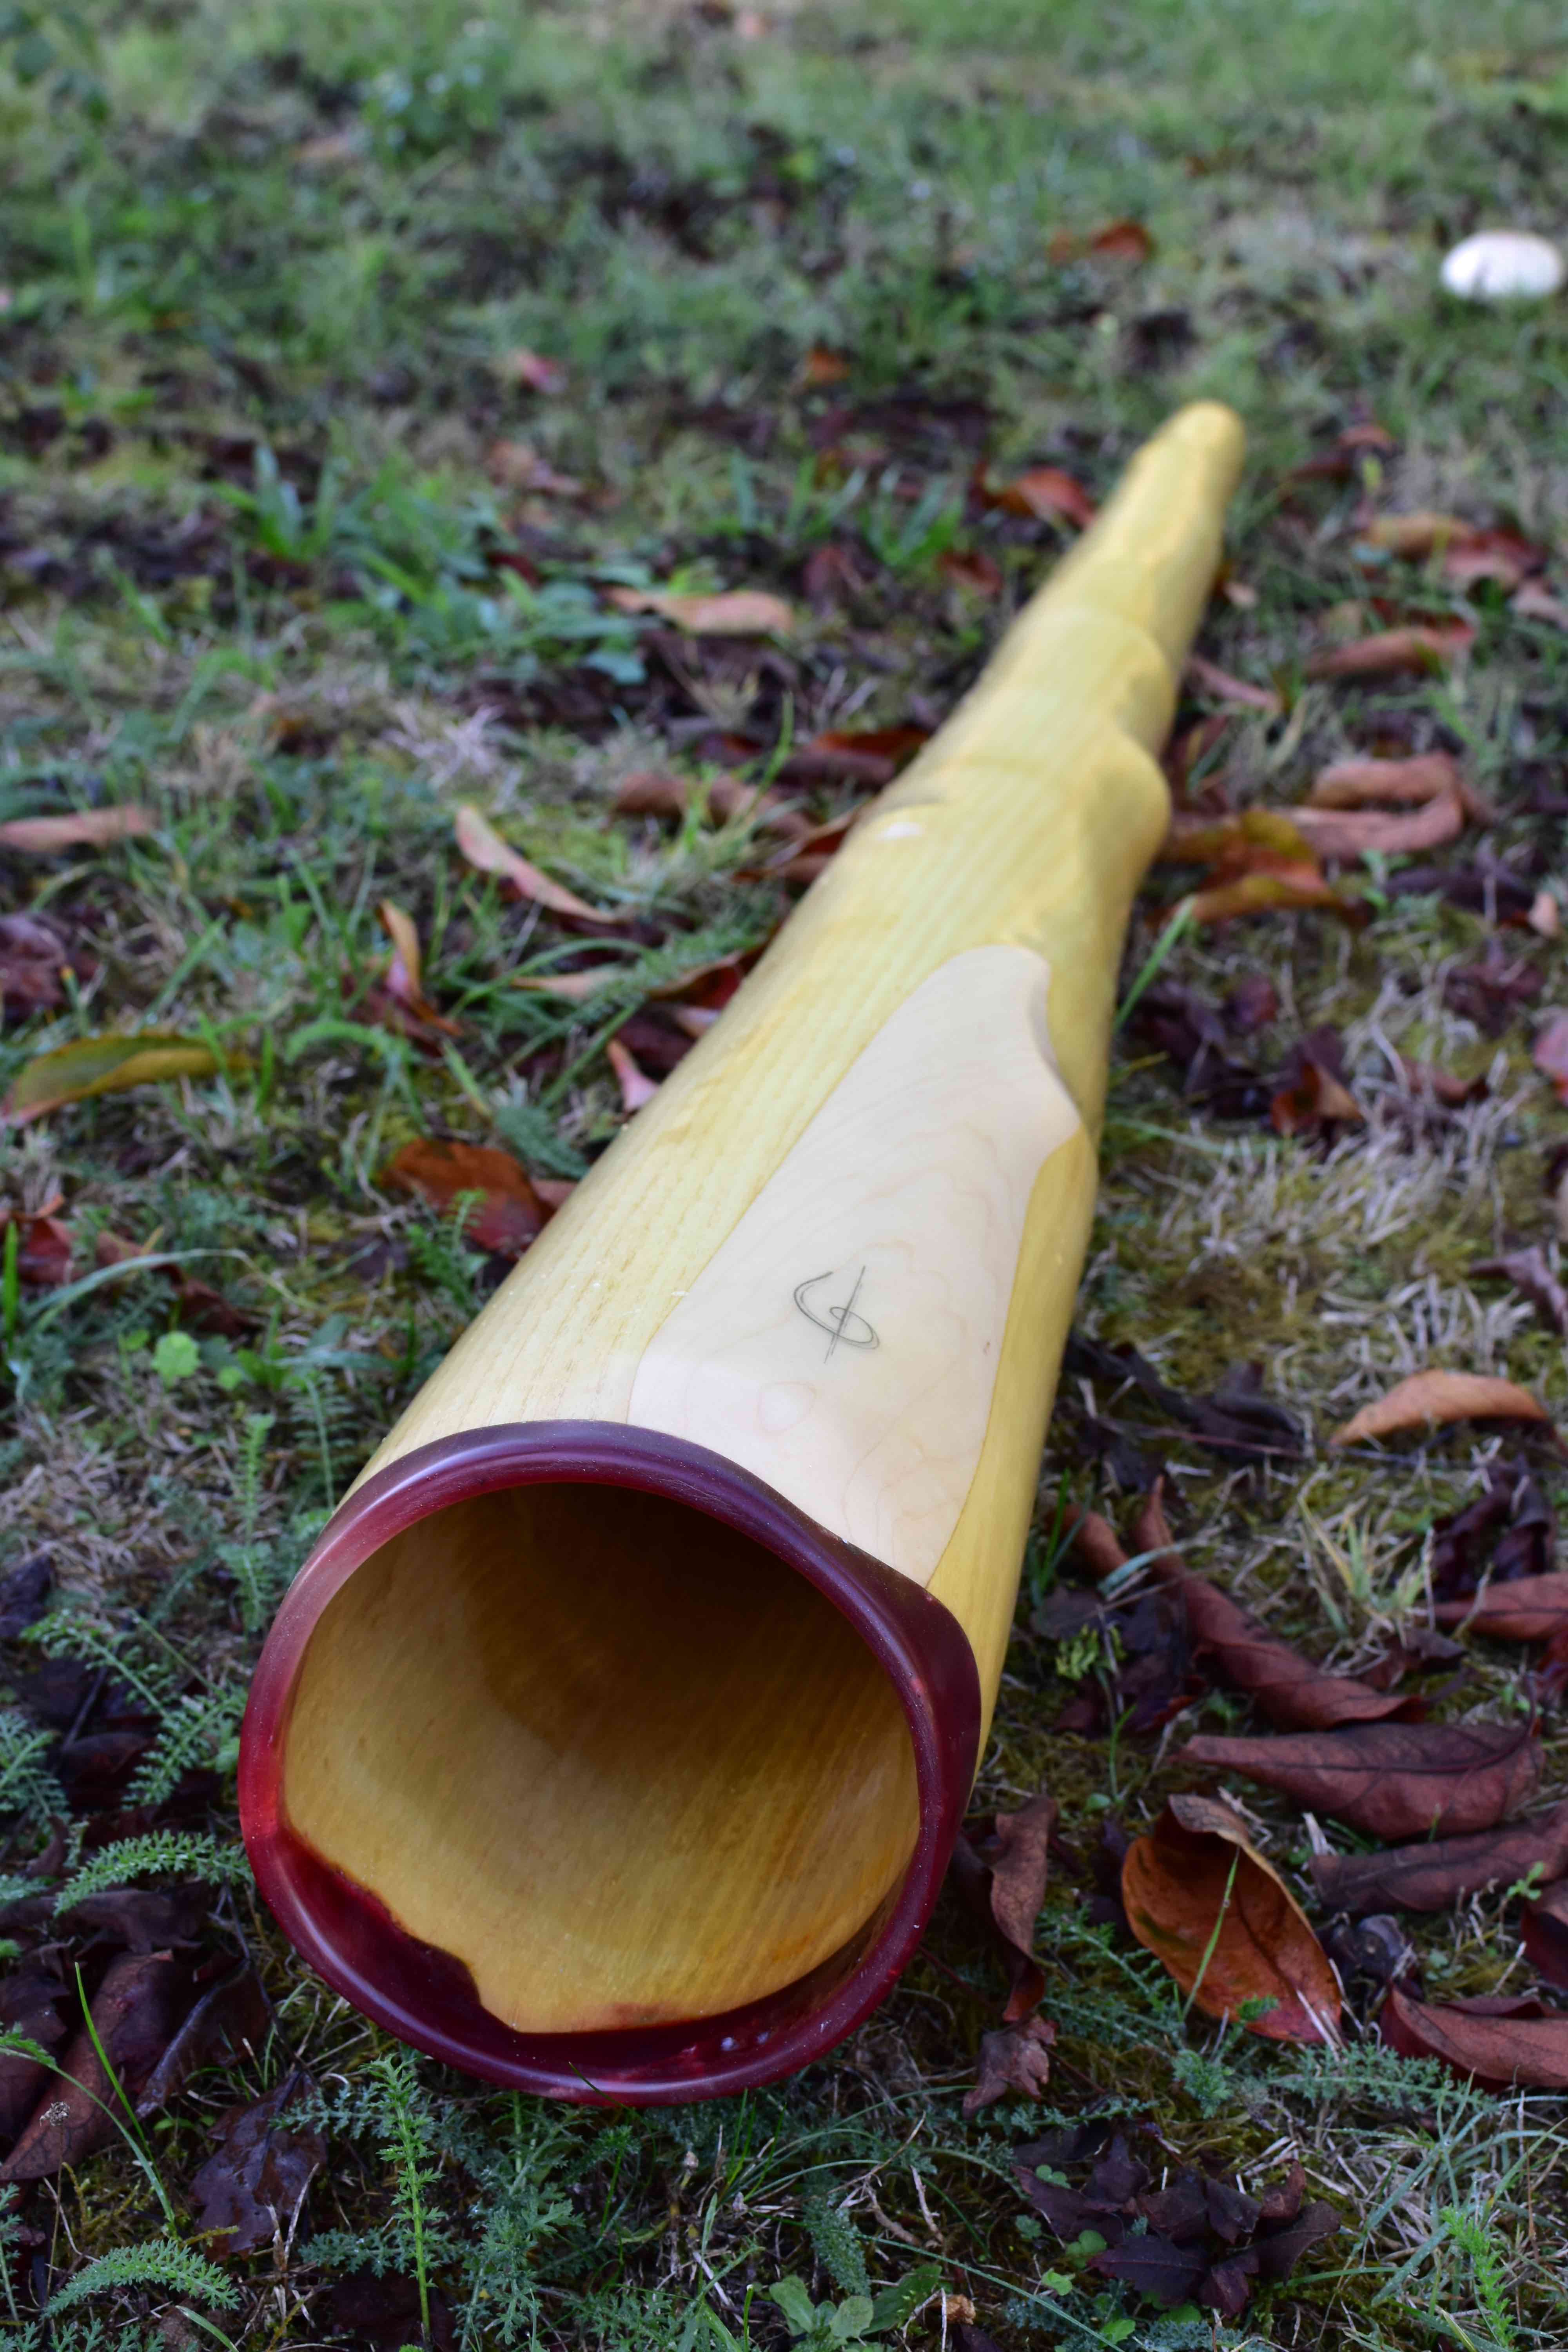 Didgeridoo, en Ré#, fabriqué en bois de robinier avec une cloche ronde avec érable et sipo